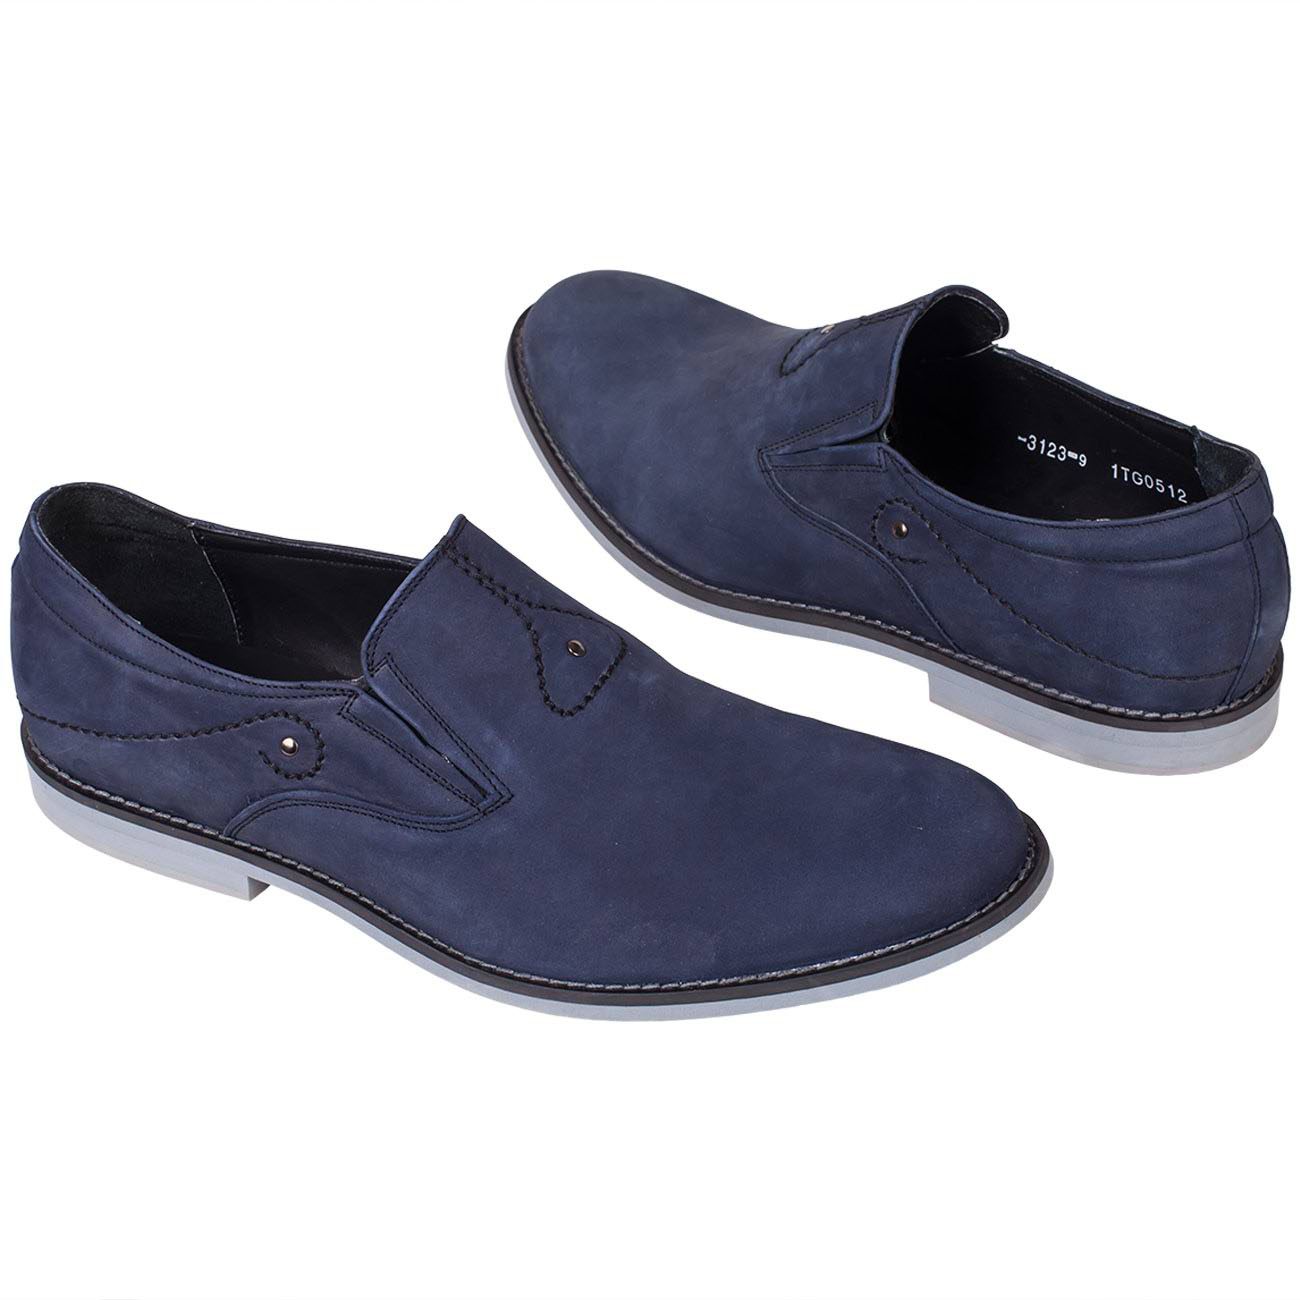 Синие мужские туфли без шнурков с белой подошвой купить в интернет магазинеKwinto